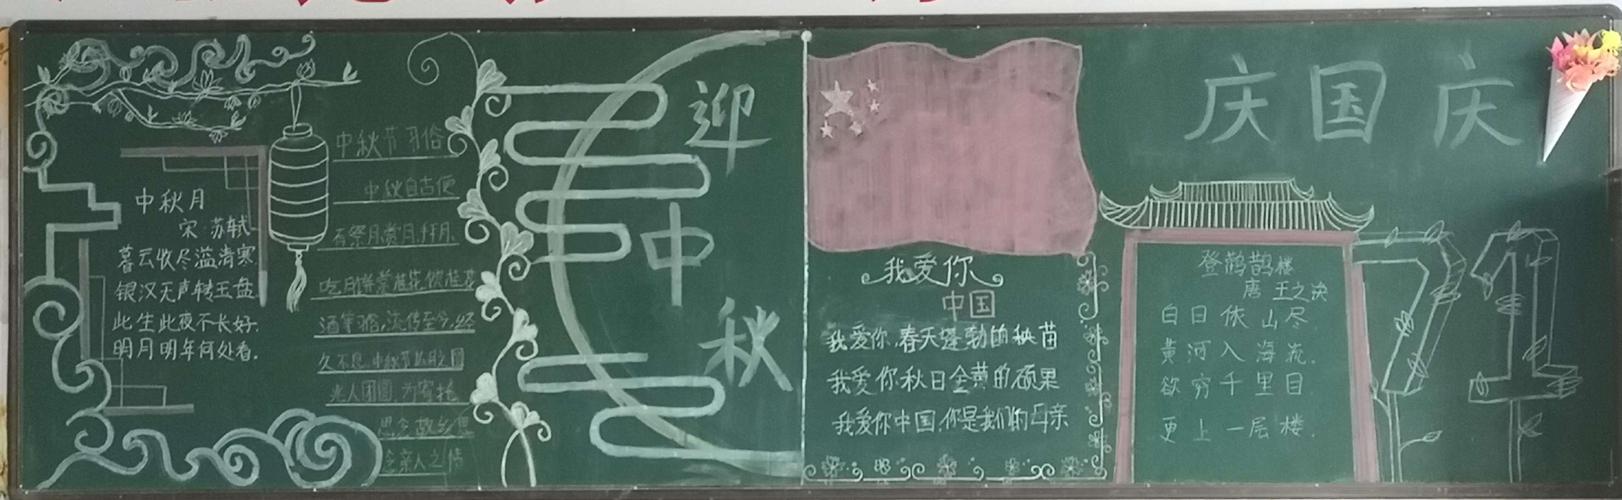 小学开展迎中秋庆国庆主题黑板报比赛副本 写美篇为让学生了解